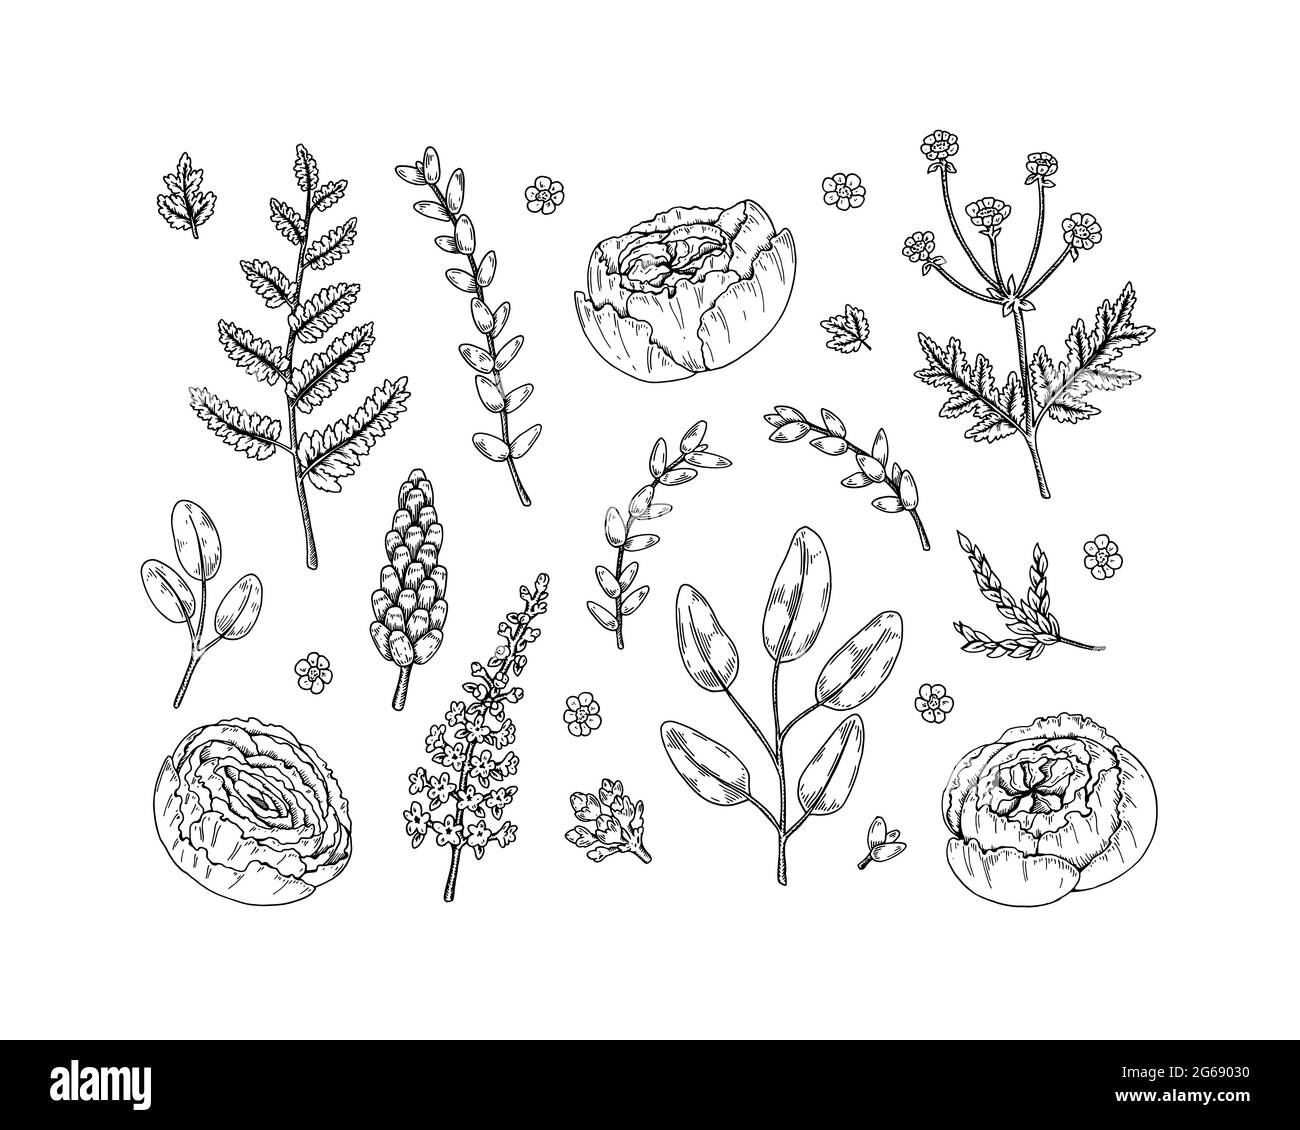 Ensemble d'éléments à motifs floraux isolés sur fond blanc. Illustration vectorielle dans le style d'esquisse Illustration de Vecteur